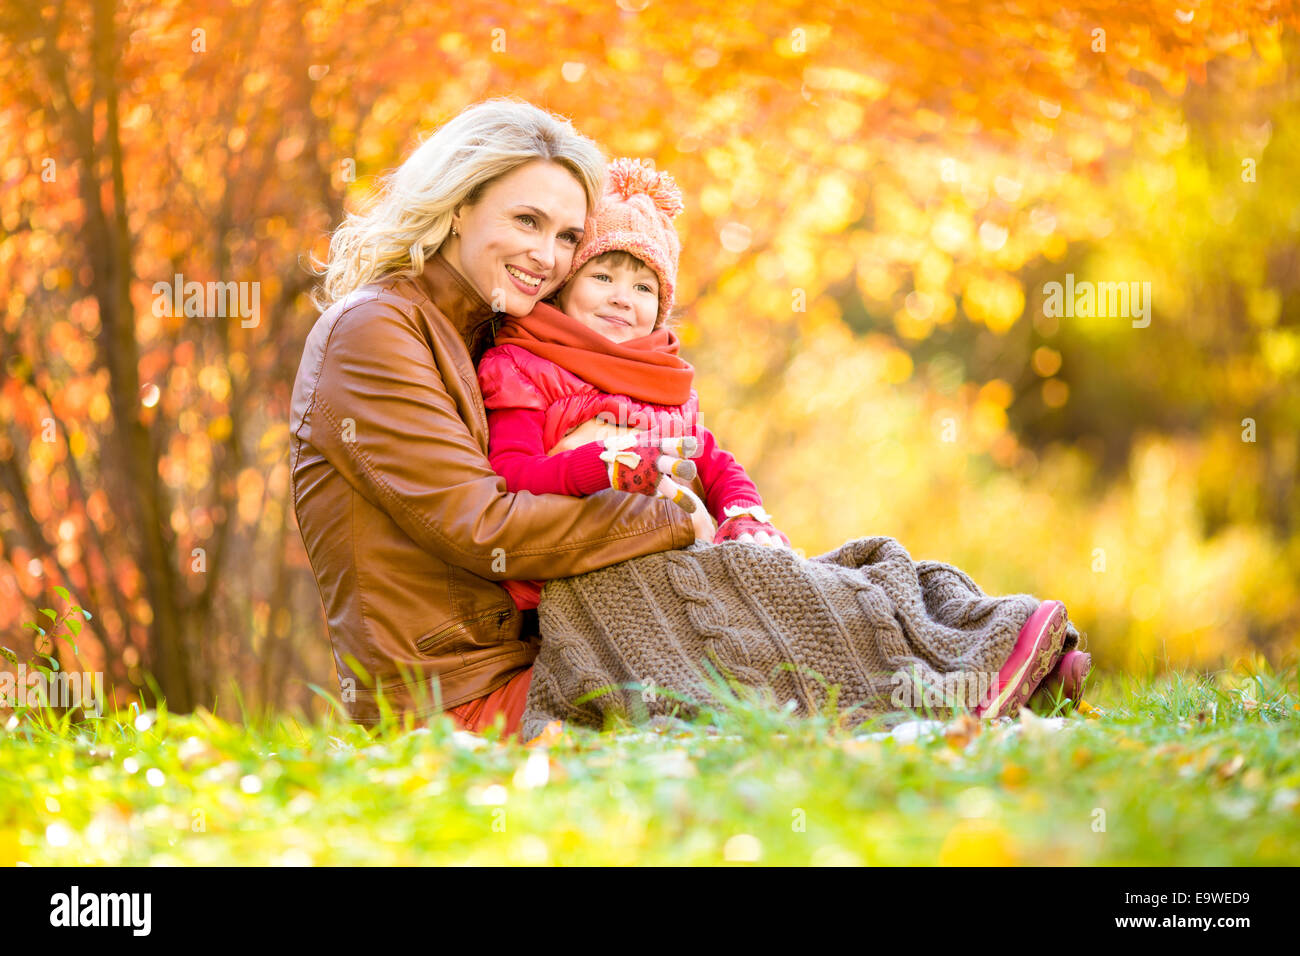 Glückliche Mutter und Kind im Freien im Herbst park Stockfoto